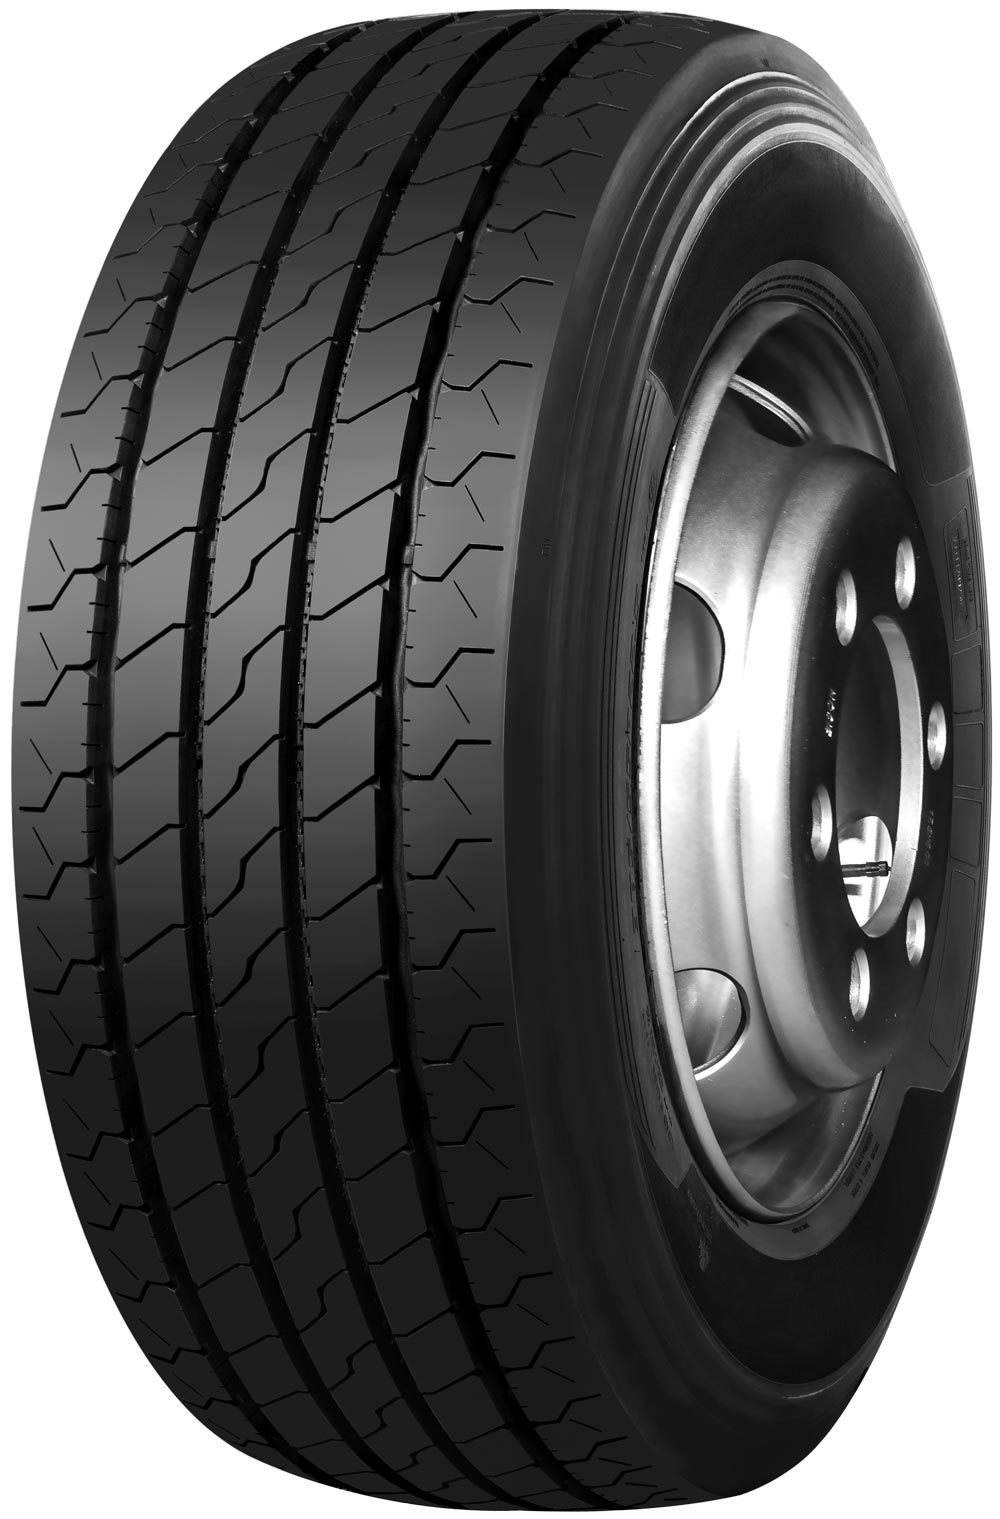 product_type-heavy_tires TRAZANO NOVO TRANS S 14 TL 215/75 R17.5 128M